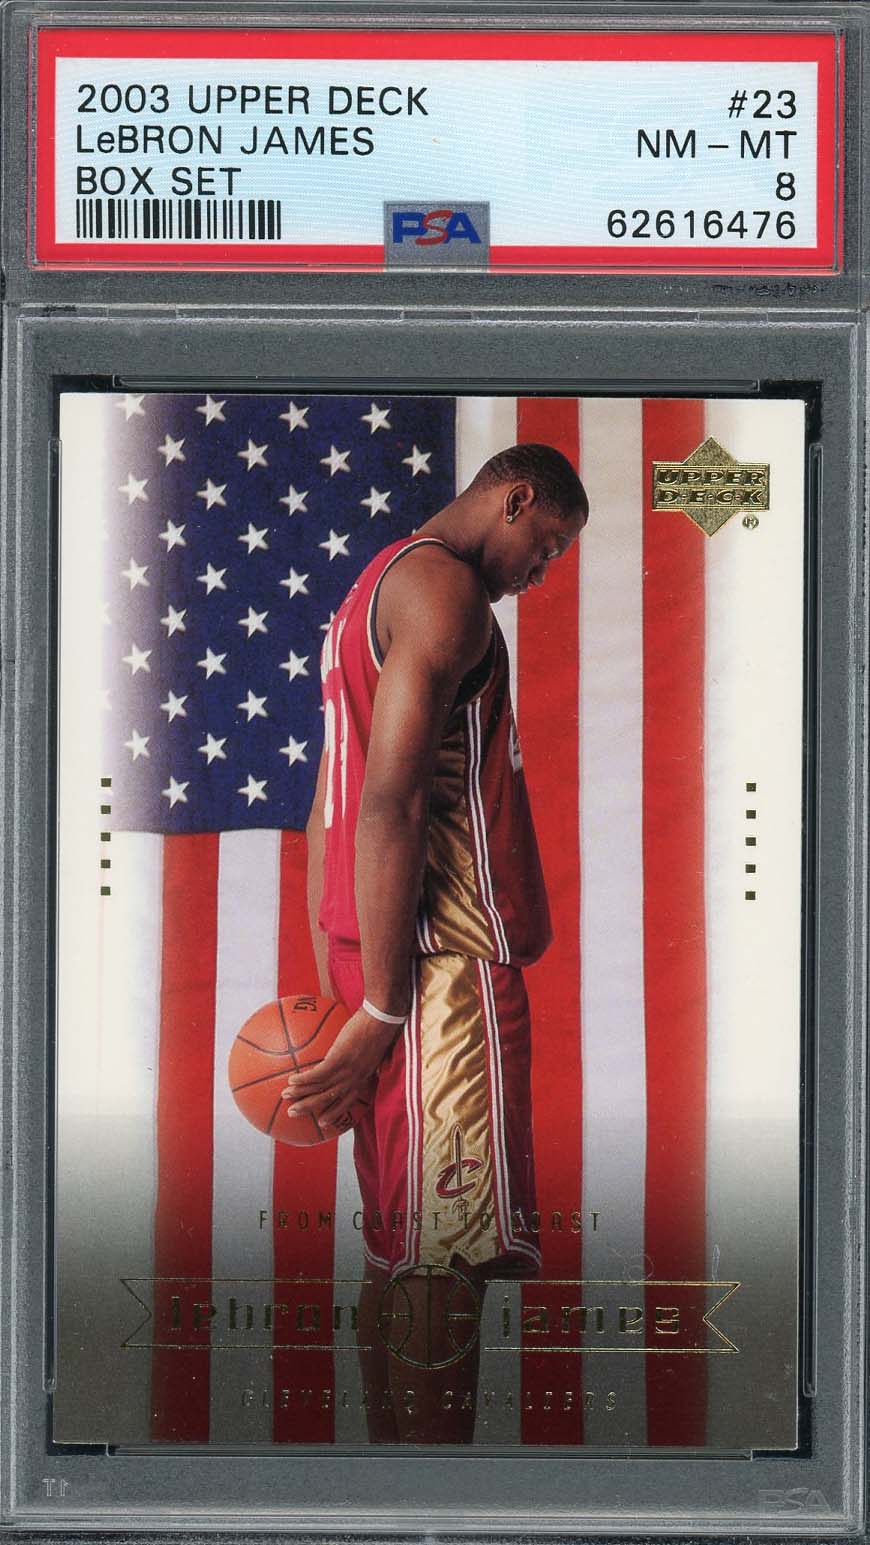 レブロン ジェームス 2003 アッパー デッキ ボックス セット バスケットボール ルーキー カード #23 グレード PSA 8